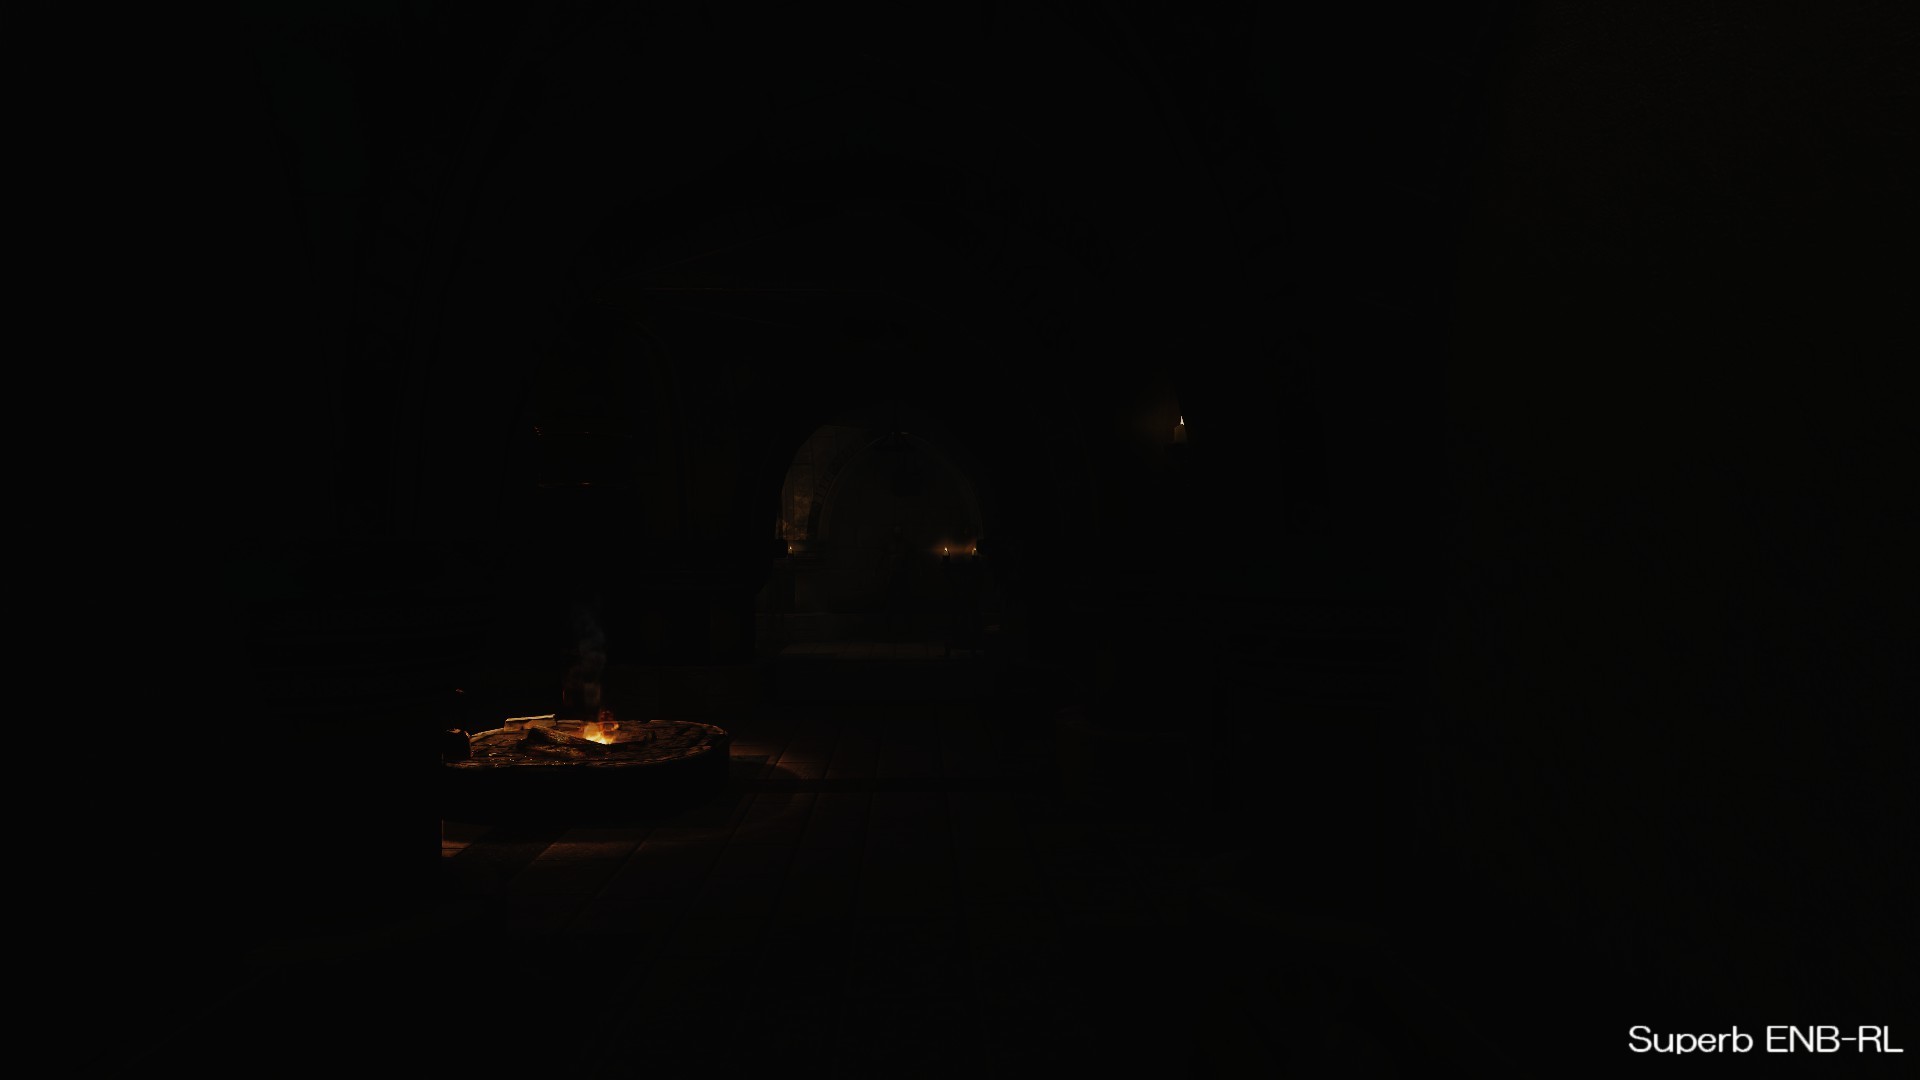 The Elder Scrolls V Skyrim紹介サイト Ultra Realistic World Lighting For Skryim Beta